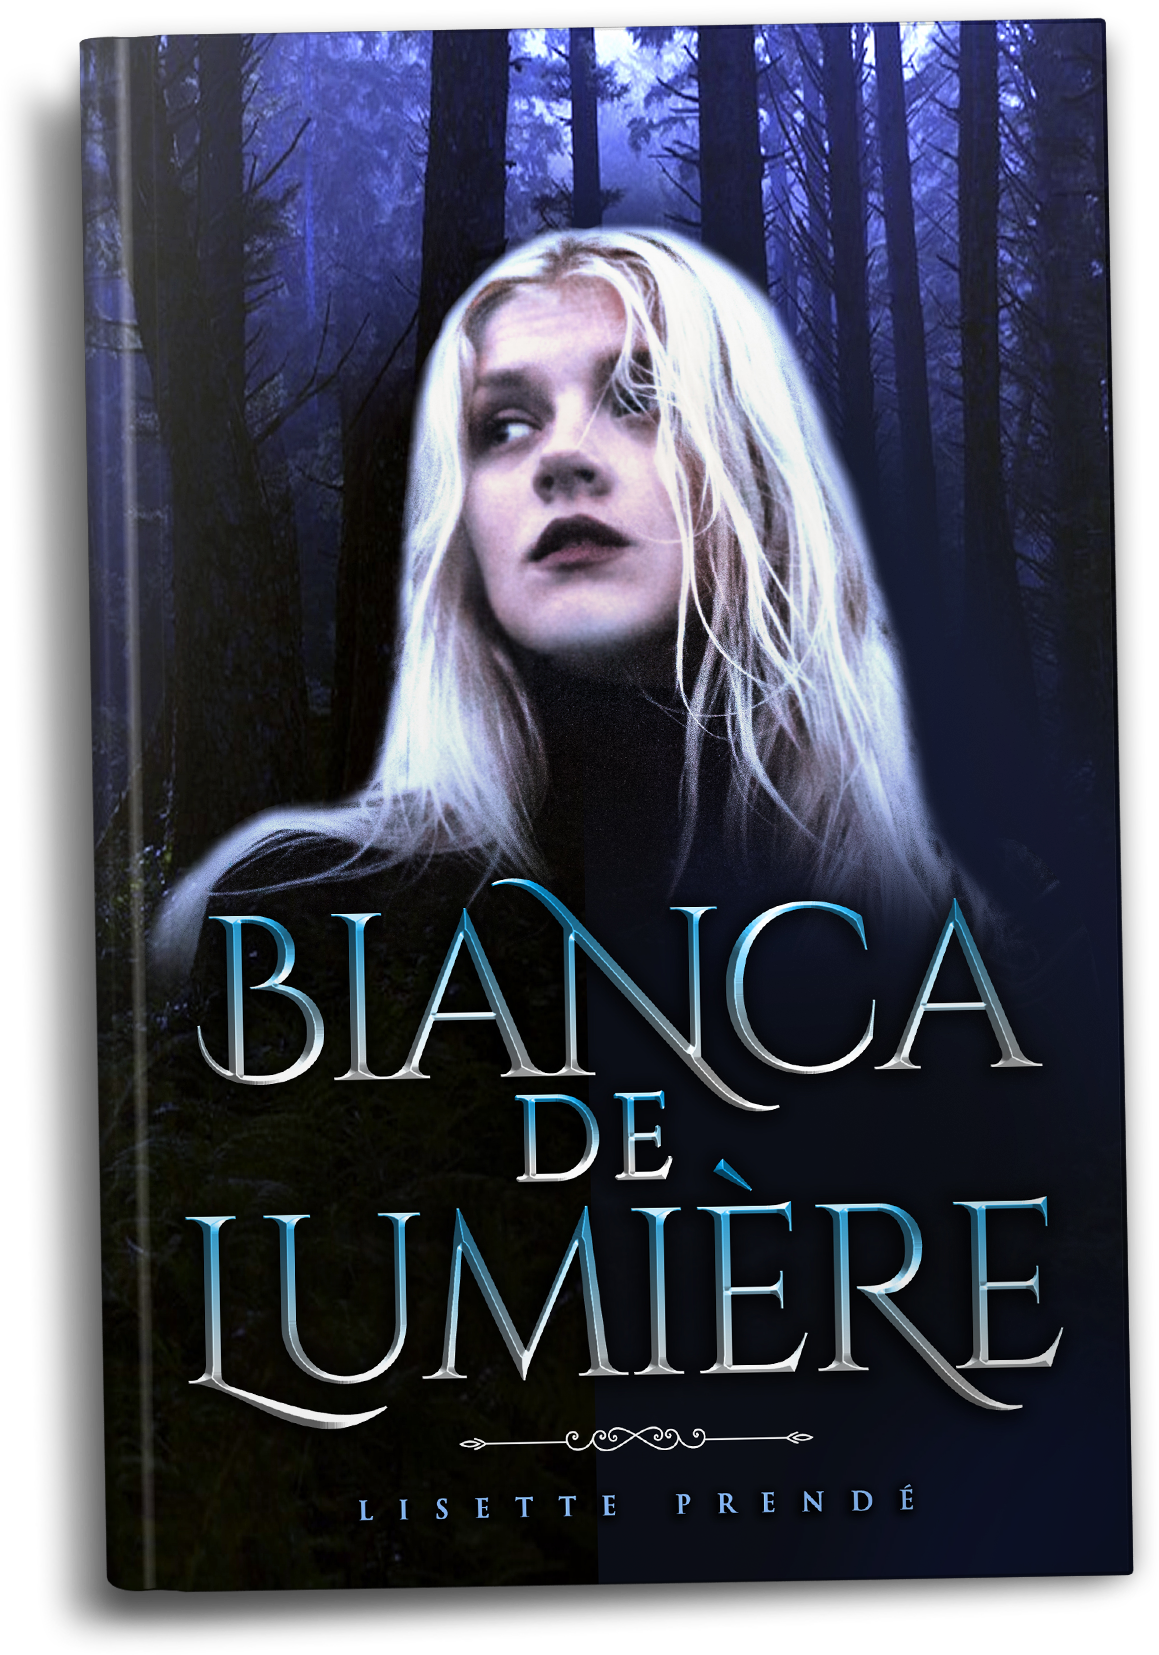 Bianca De Lumiere by Lisette Prende